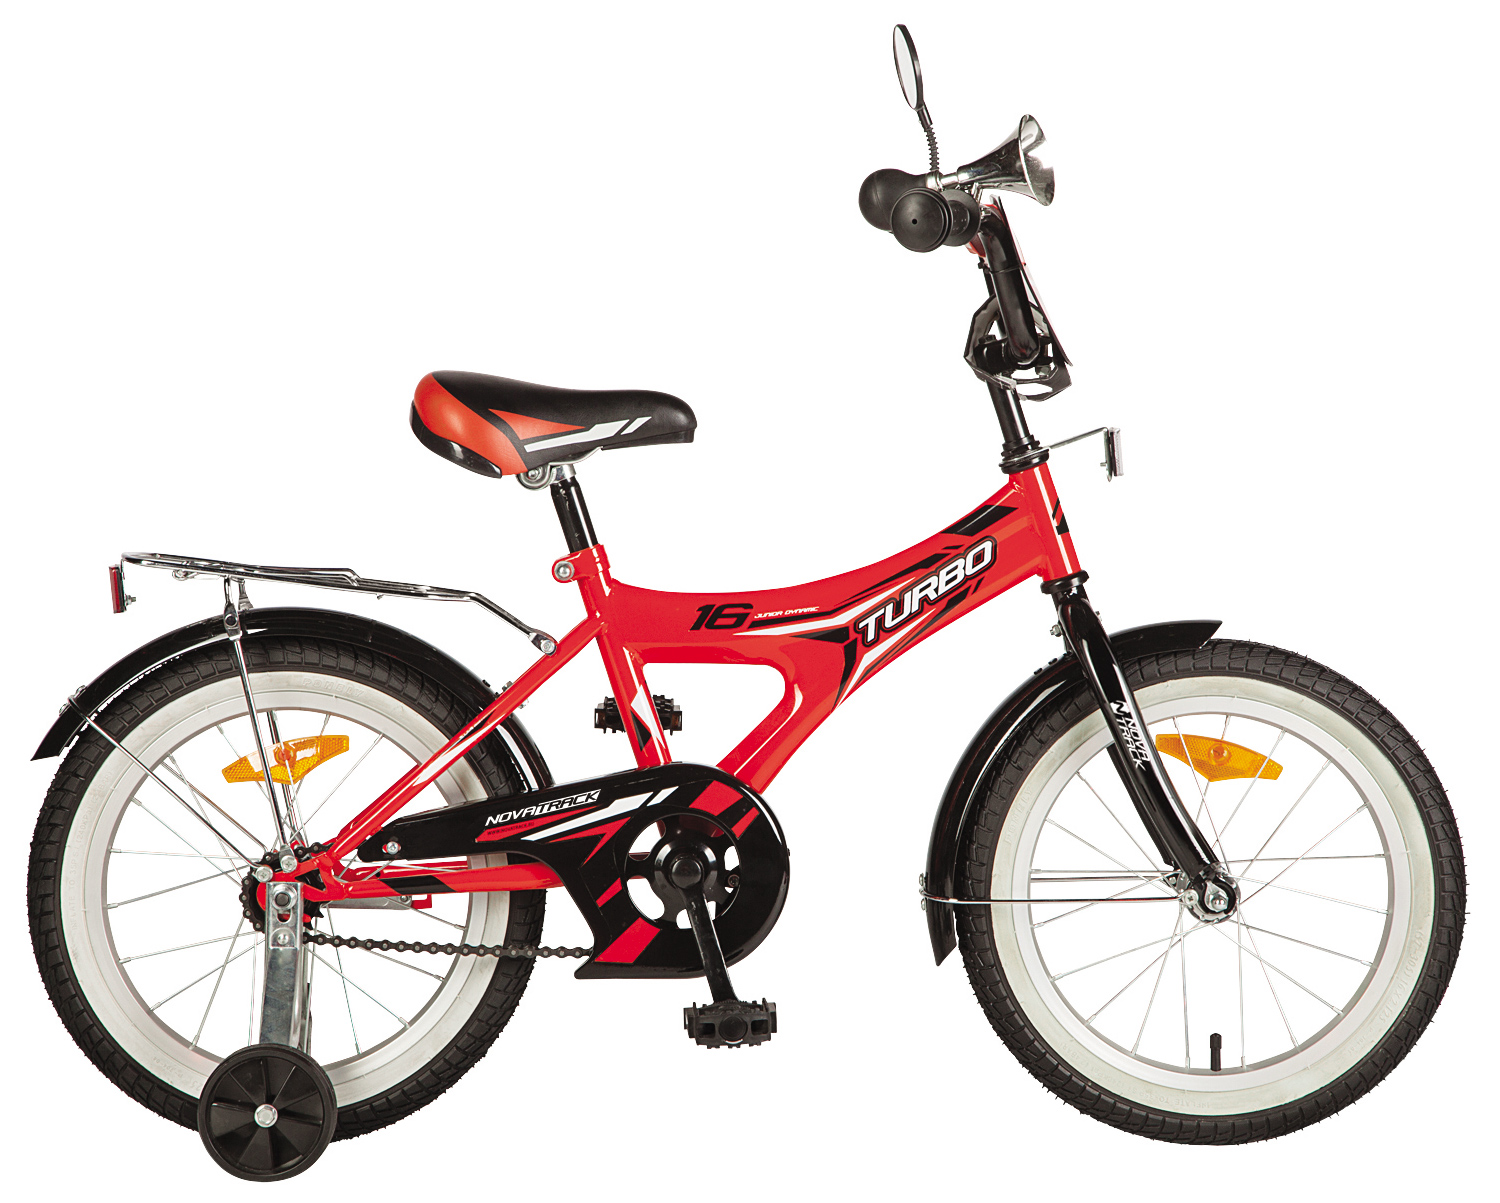  Отзывы о Детском велосипеде Novatrack Turbo 16 2019